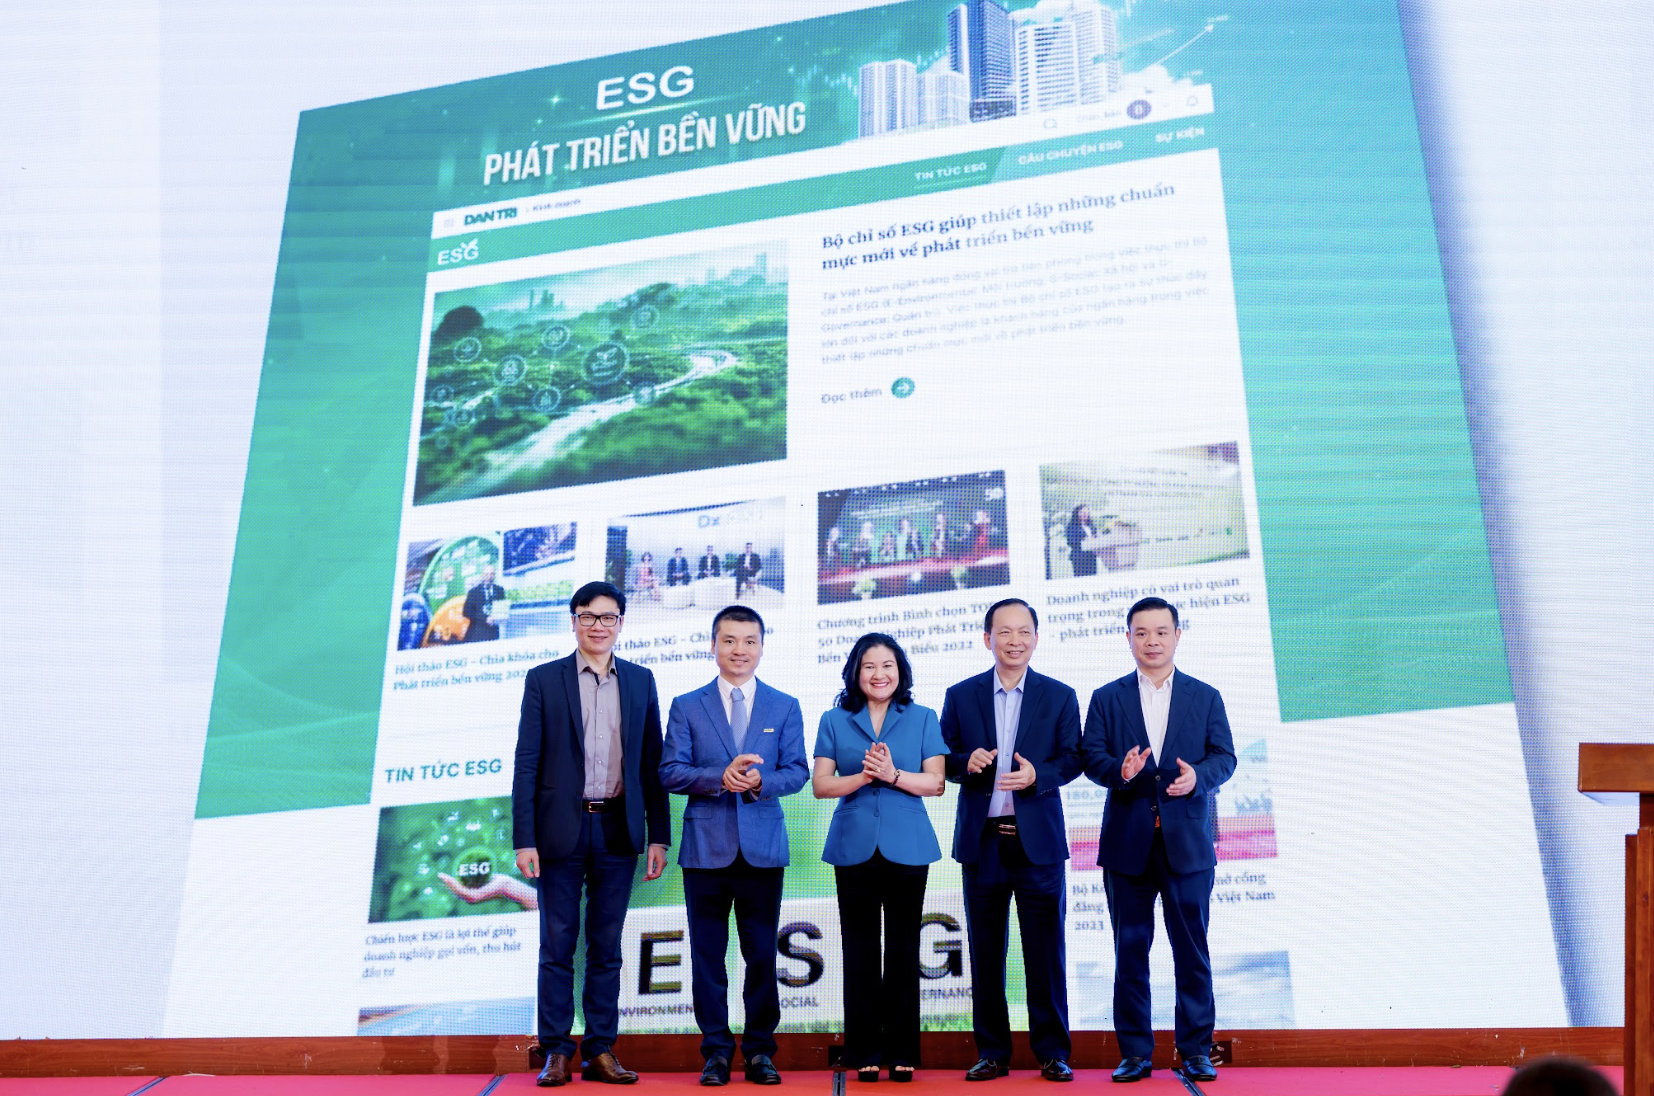 Lãnh đạo Bamboo Capital, Deloitte, OCB, Nhựa tái chế Duy Tân nói gì về ESG?